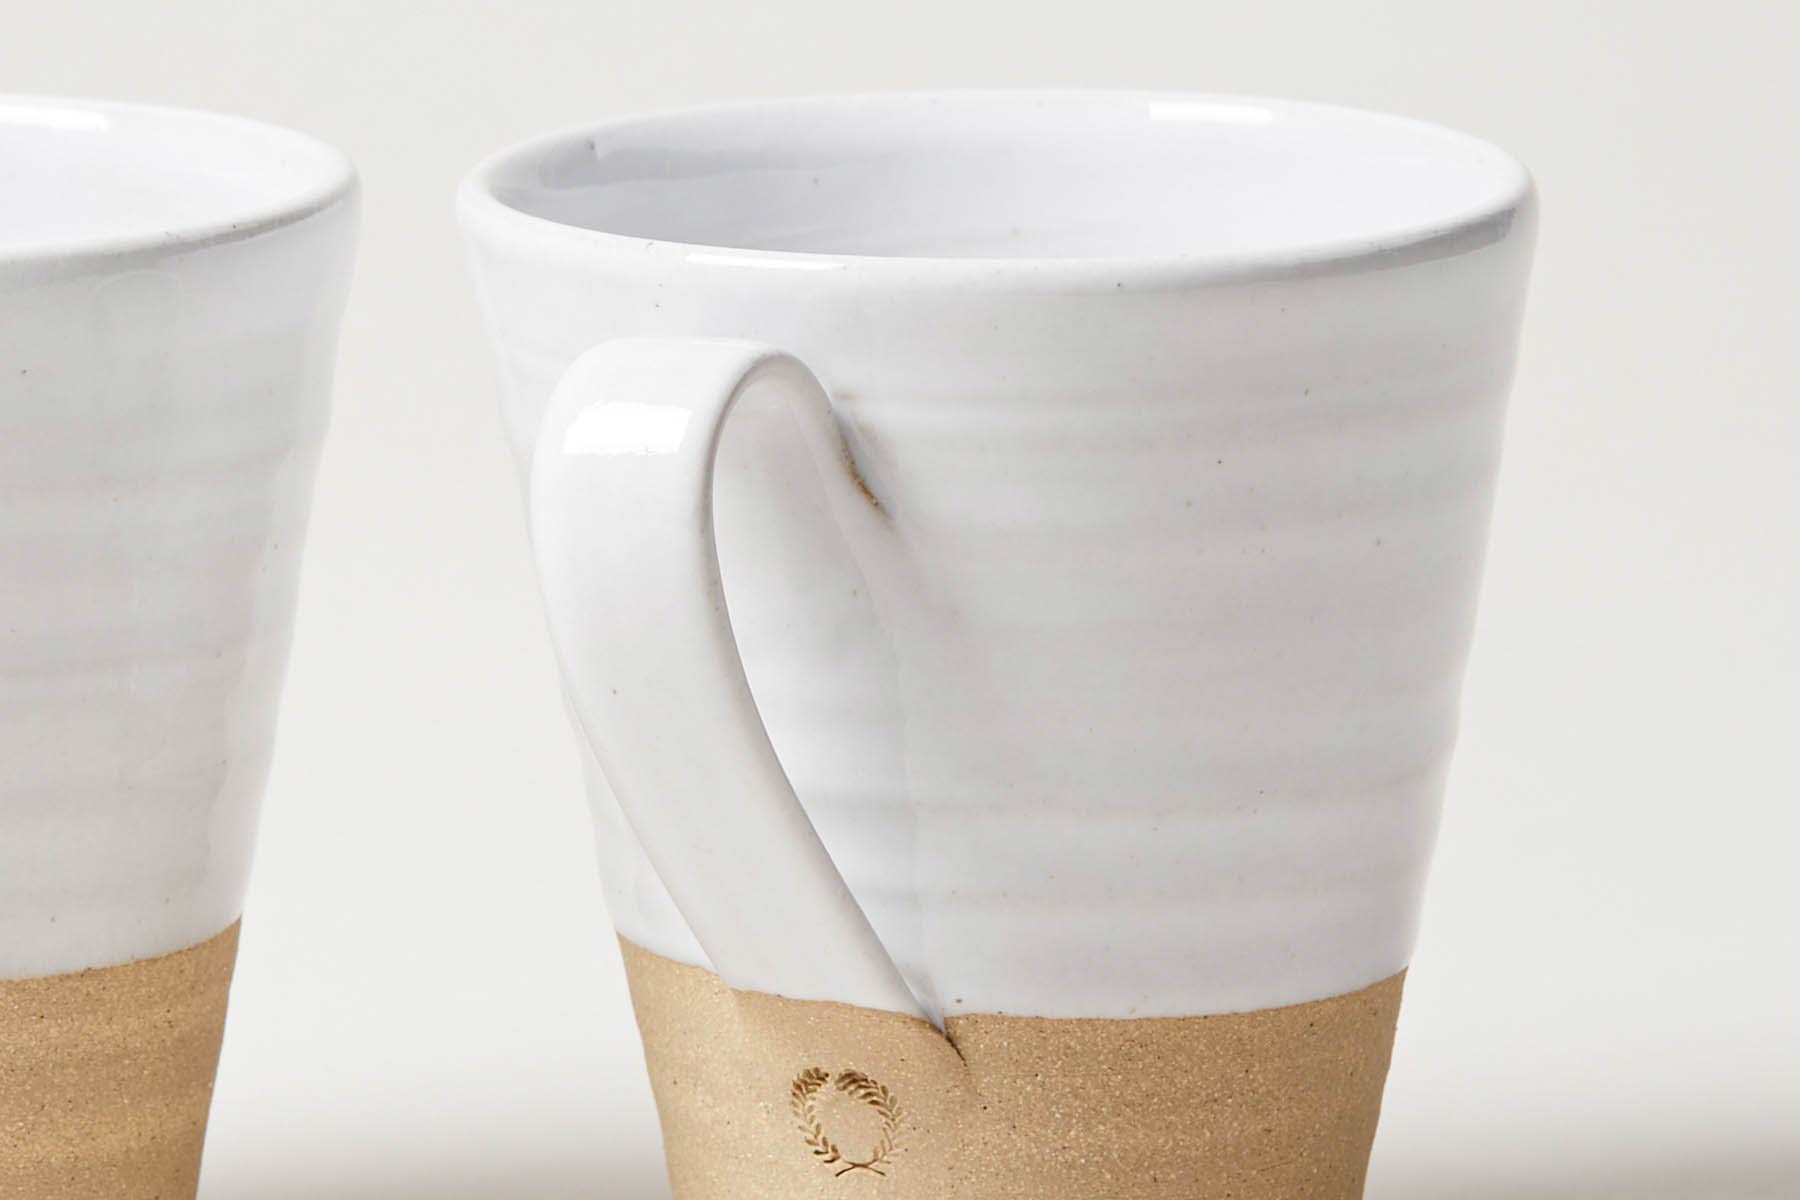 Silo Mug & Coffee Gift Set